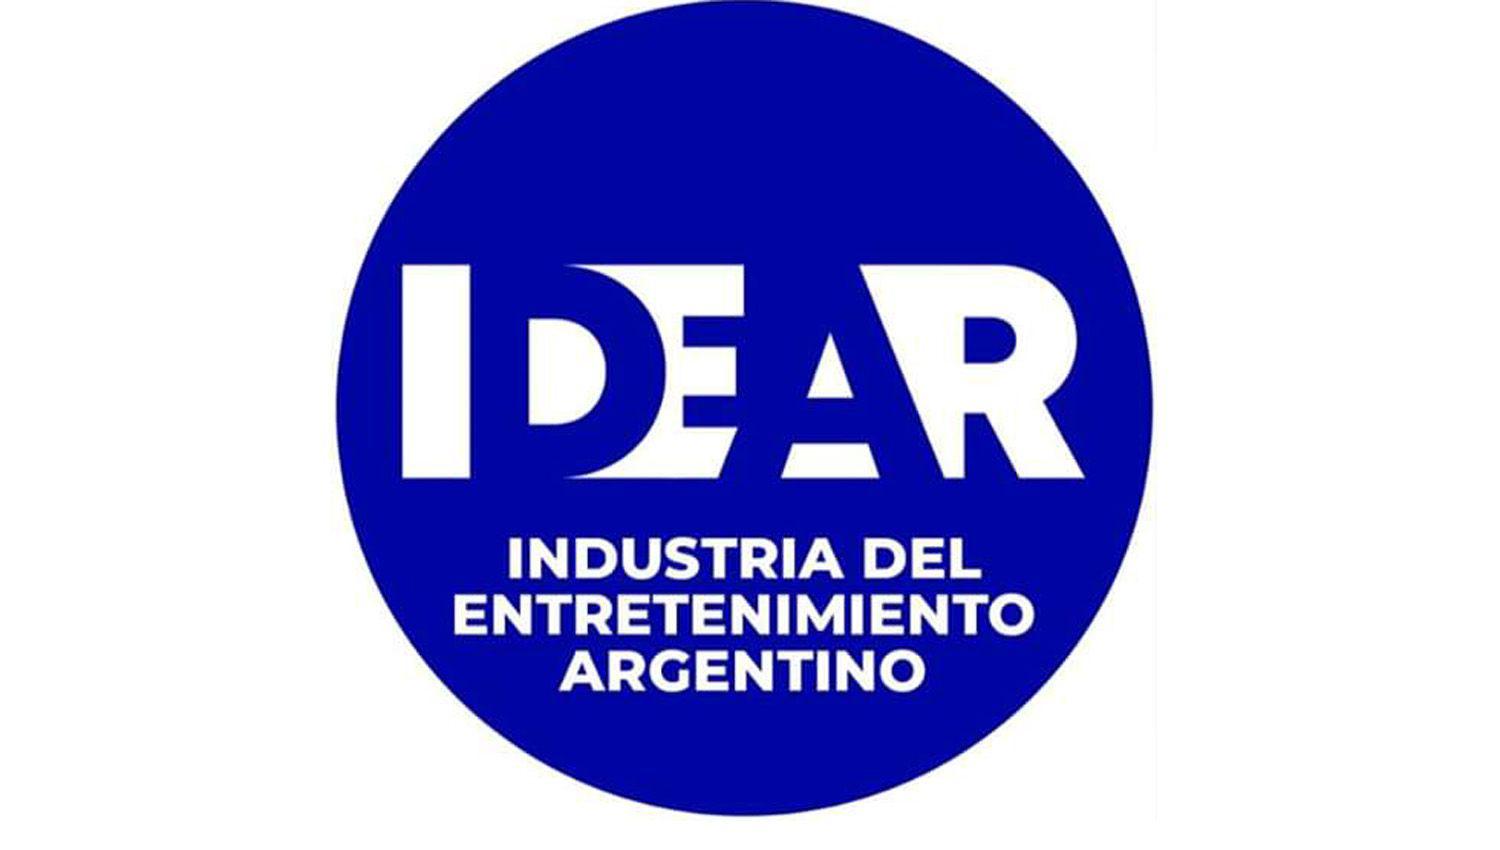 En medio de la pandemia empresarios pymes y actores de la Industria del Entretenimiento Argentino se unen y lanzan una nueva caacutemara